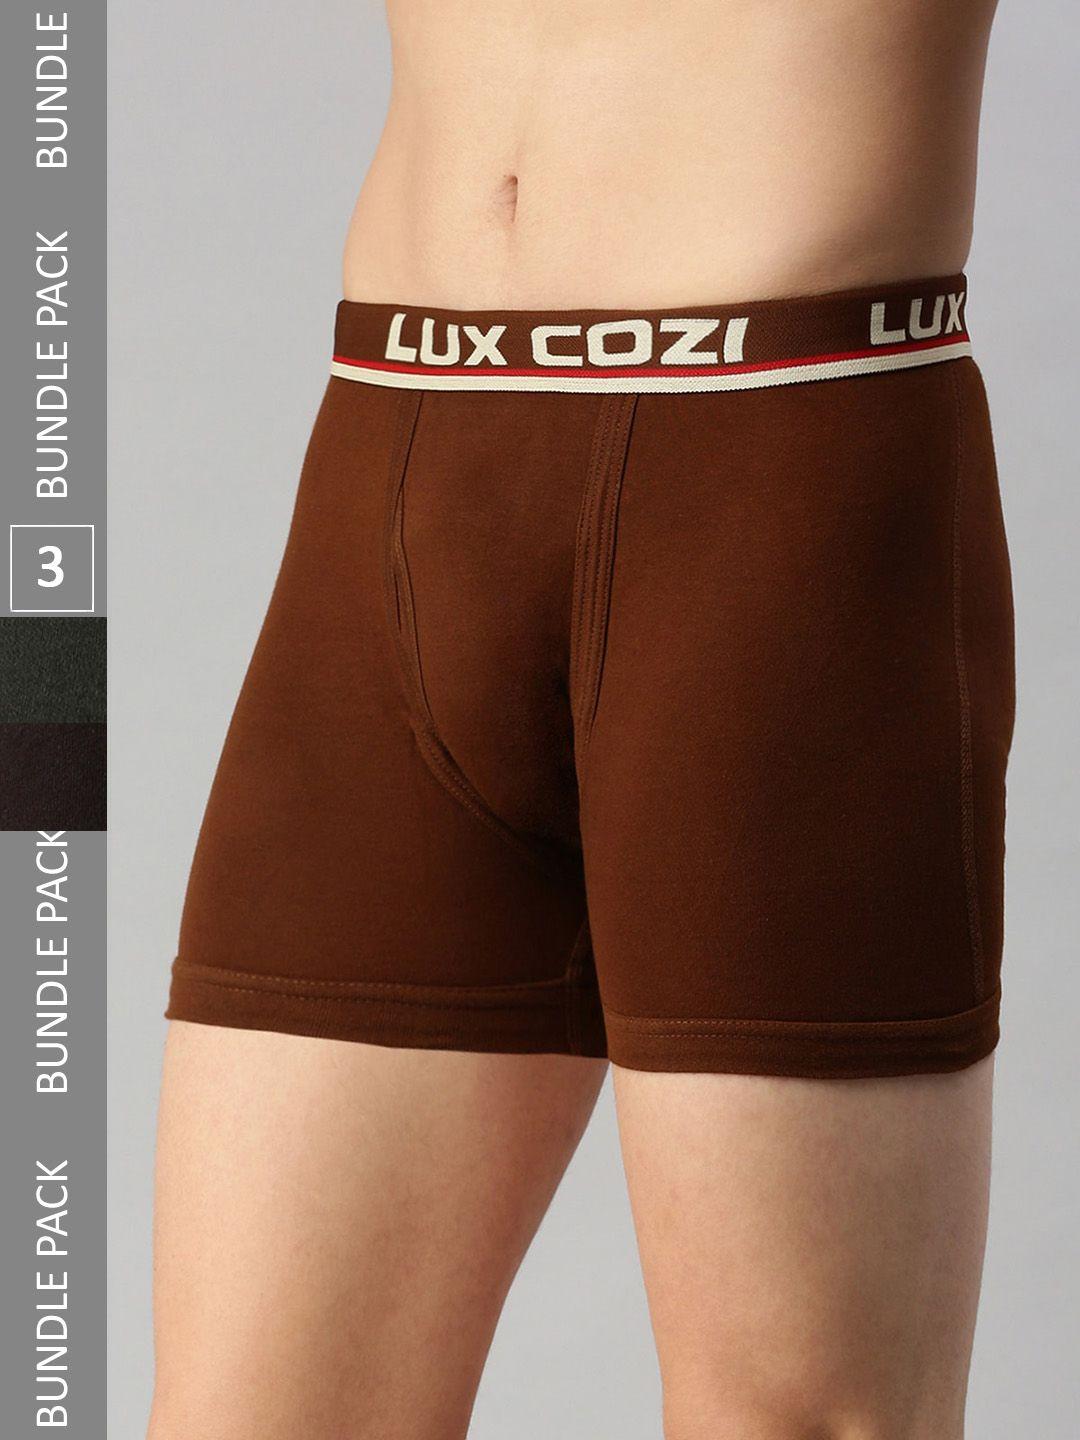 lux cozi men pack of 3 mid-rise breathable trunks cozi_intlock_cof_mst_dg_3pc